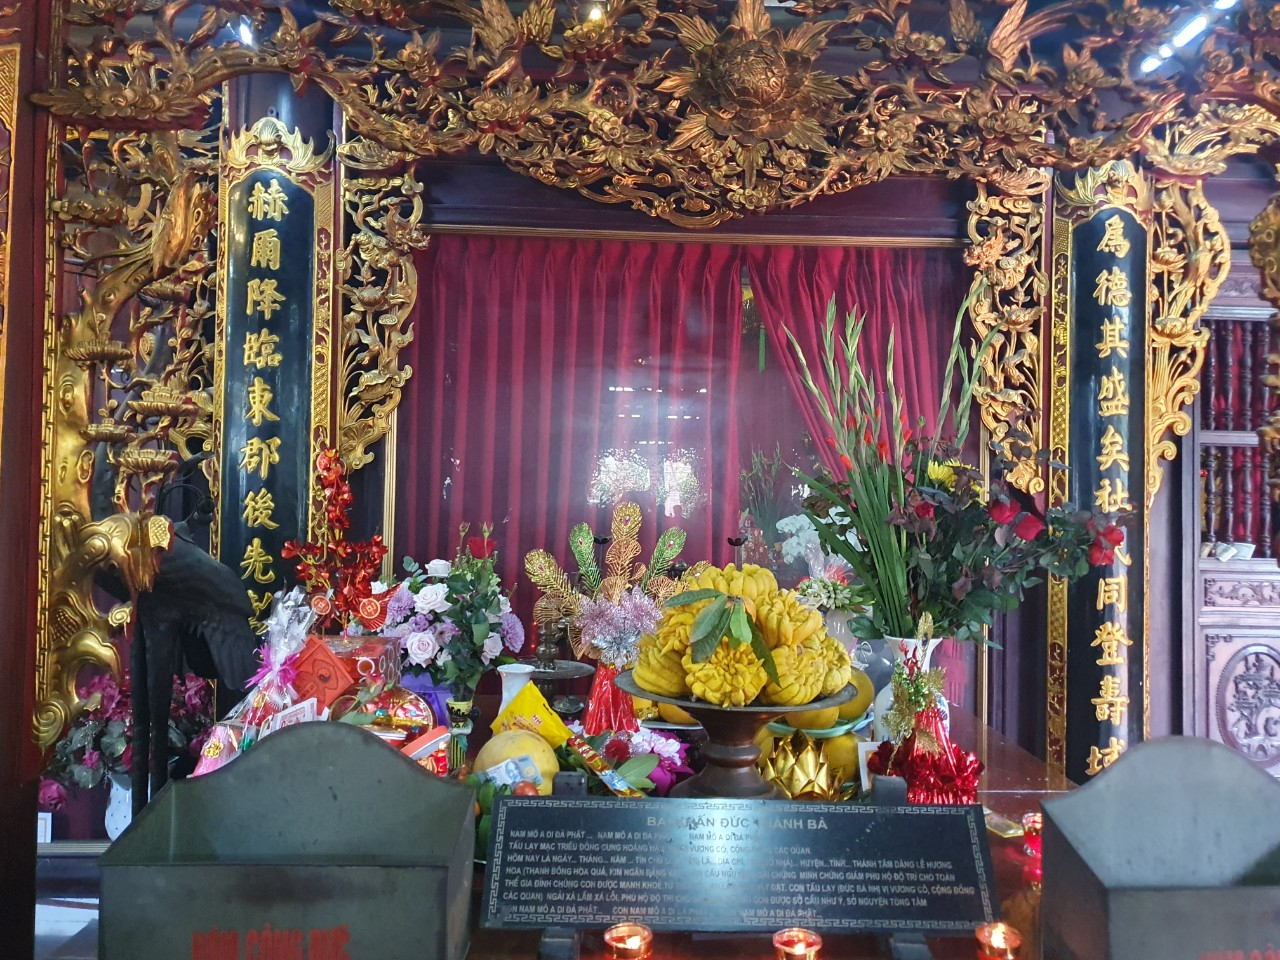 Bia Bà nằm ở làng La Khê, quận Hà Đông, TP Hà Nội thờ Bà Đệ Nhị Cung Phi triều Mạc Thái Tông. Bà tên thật là Trần Thị Hiền - Hoàng phi của Vua Mạc Đăng Doanh. Bà được phong là Đông cung Hoàng hậu sau khi mất.